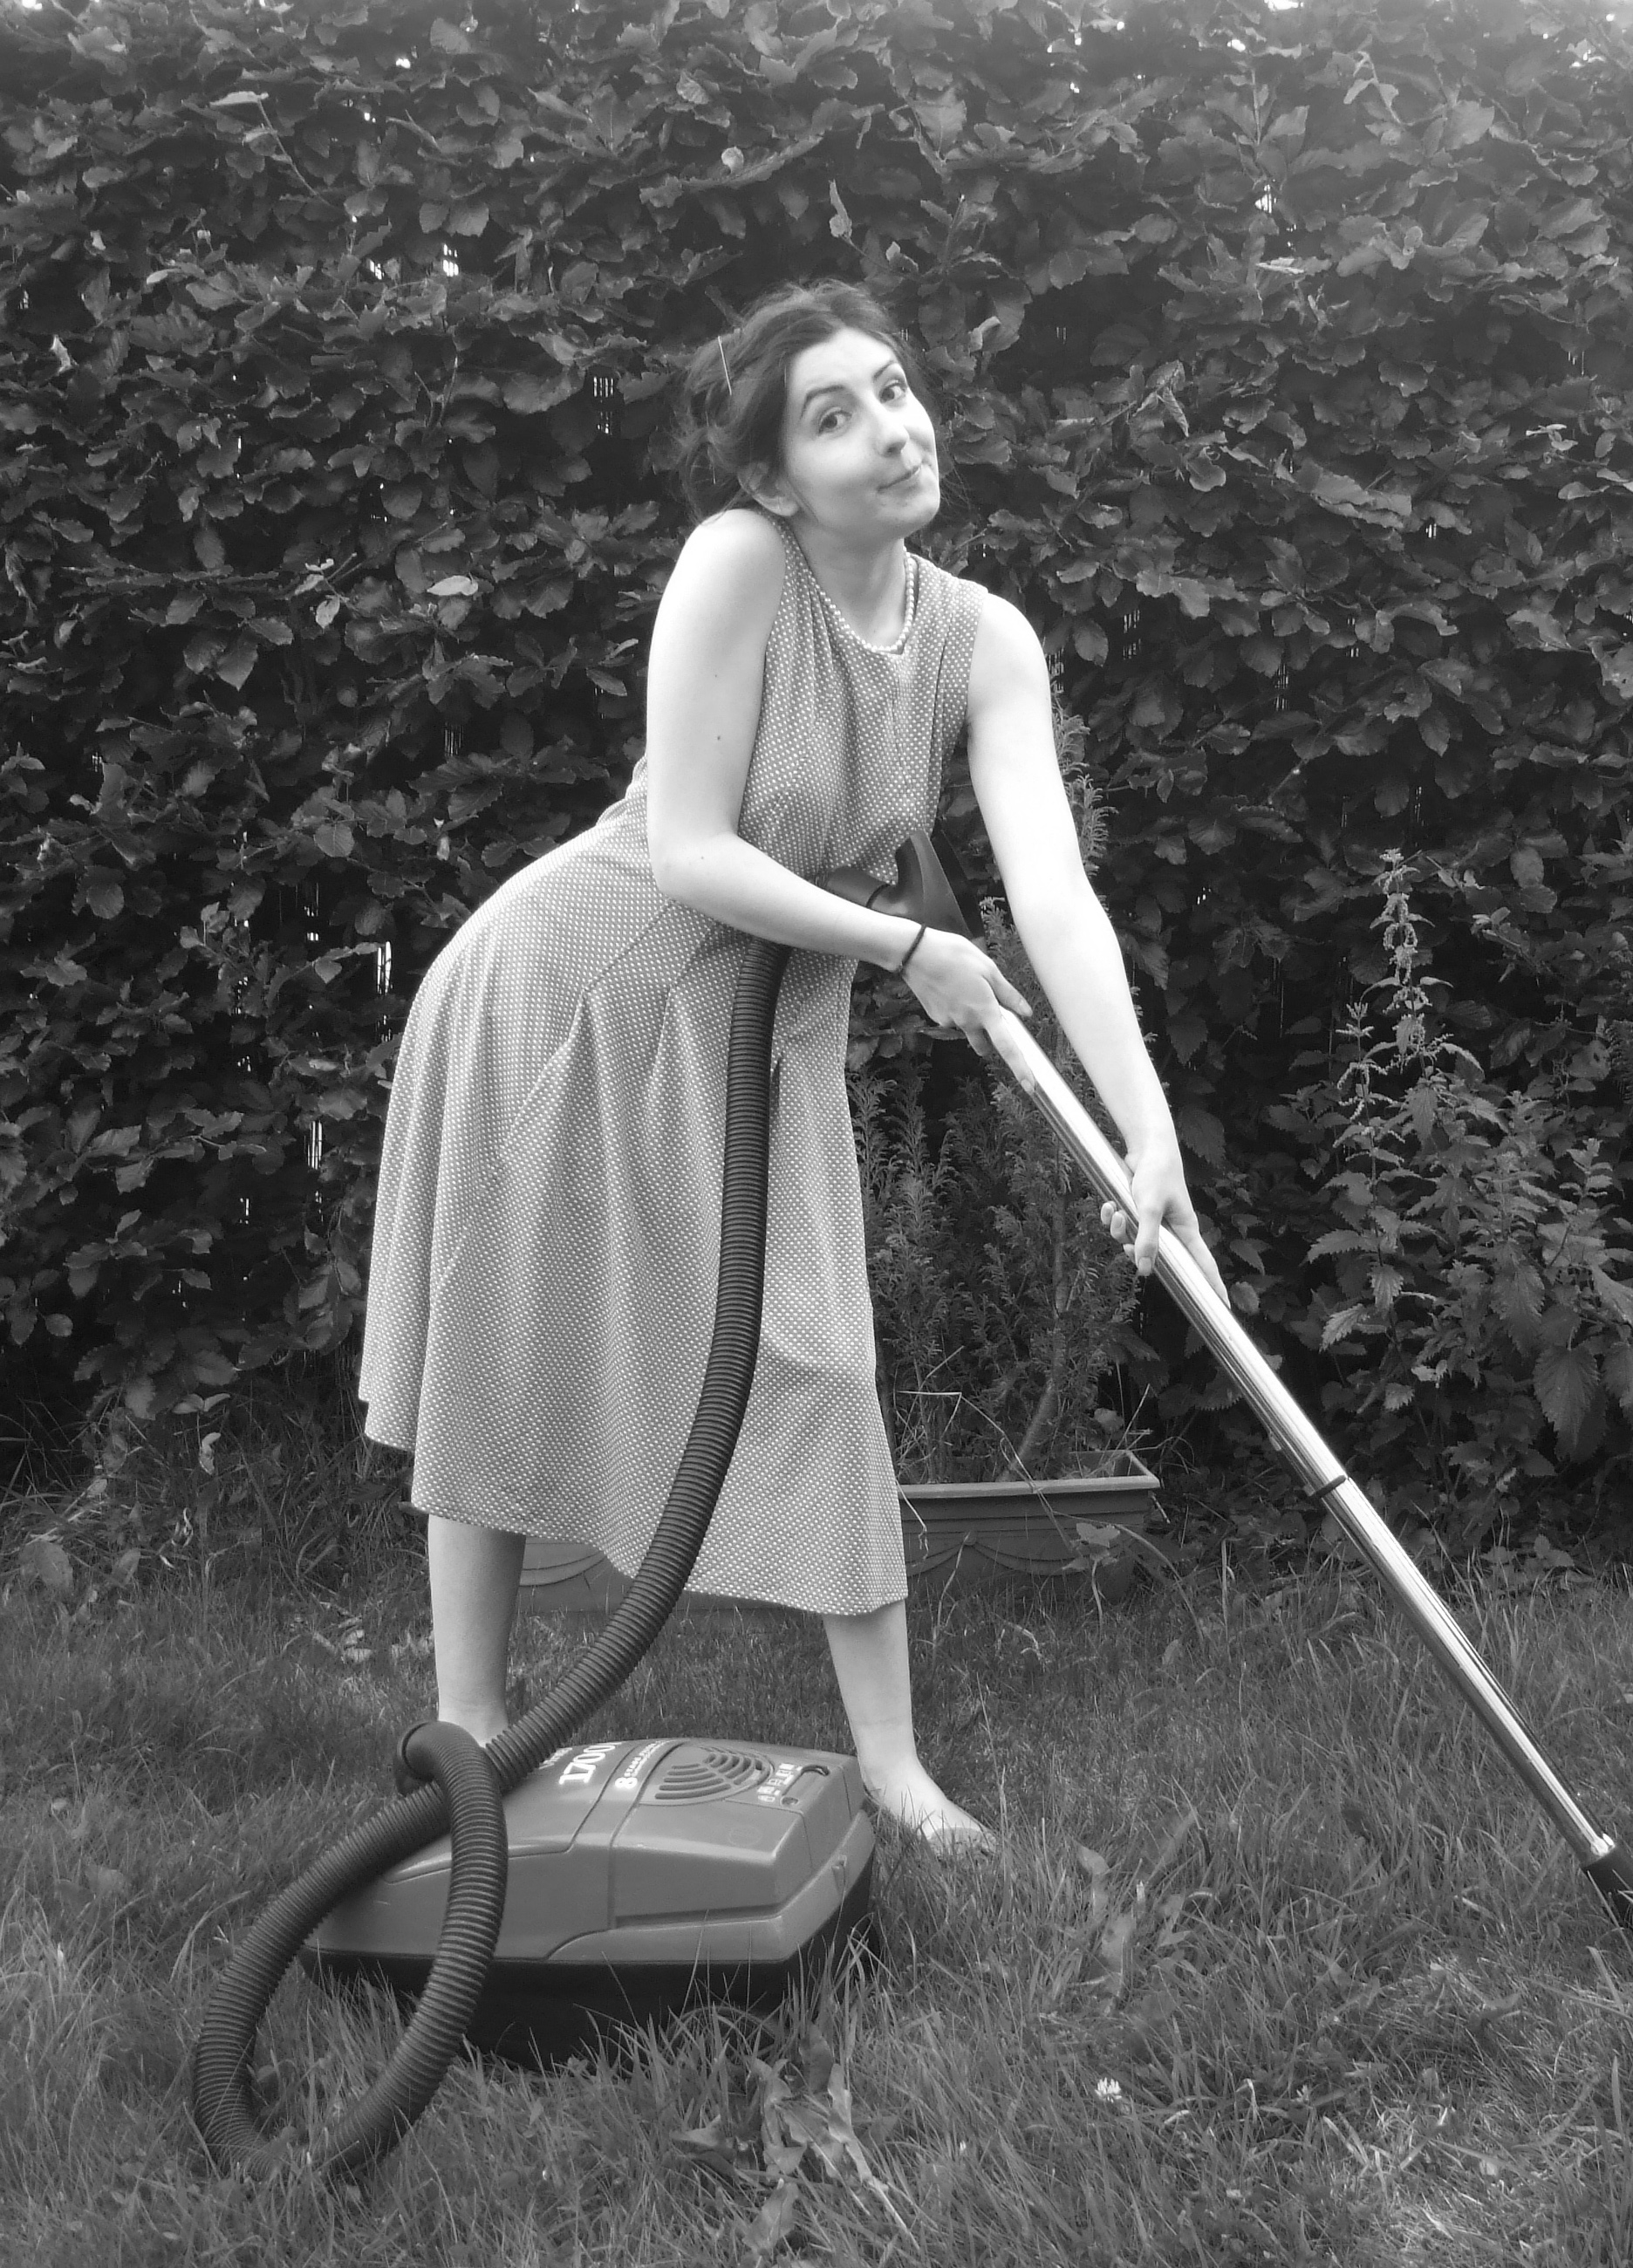 Item 139 - Lawn Vacuuming